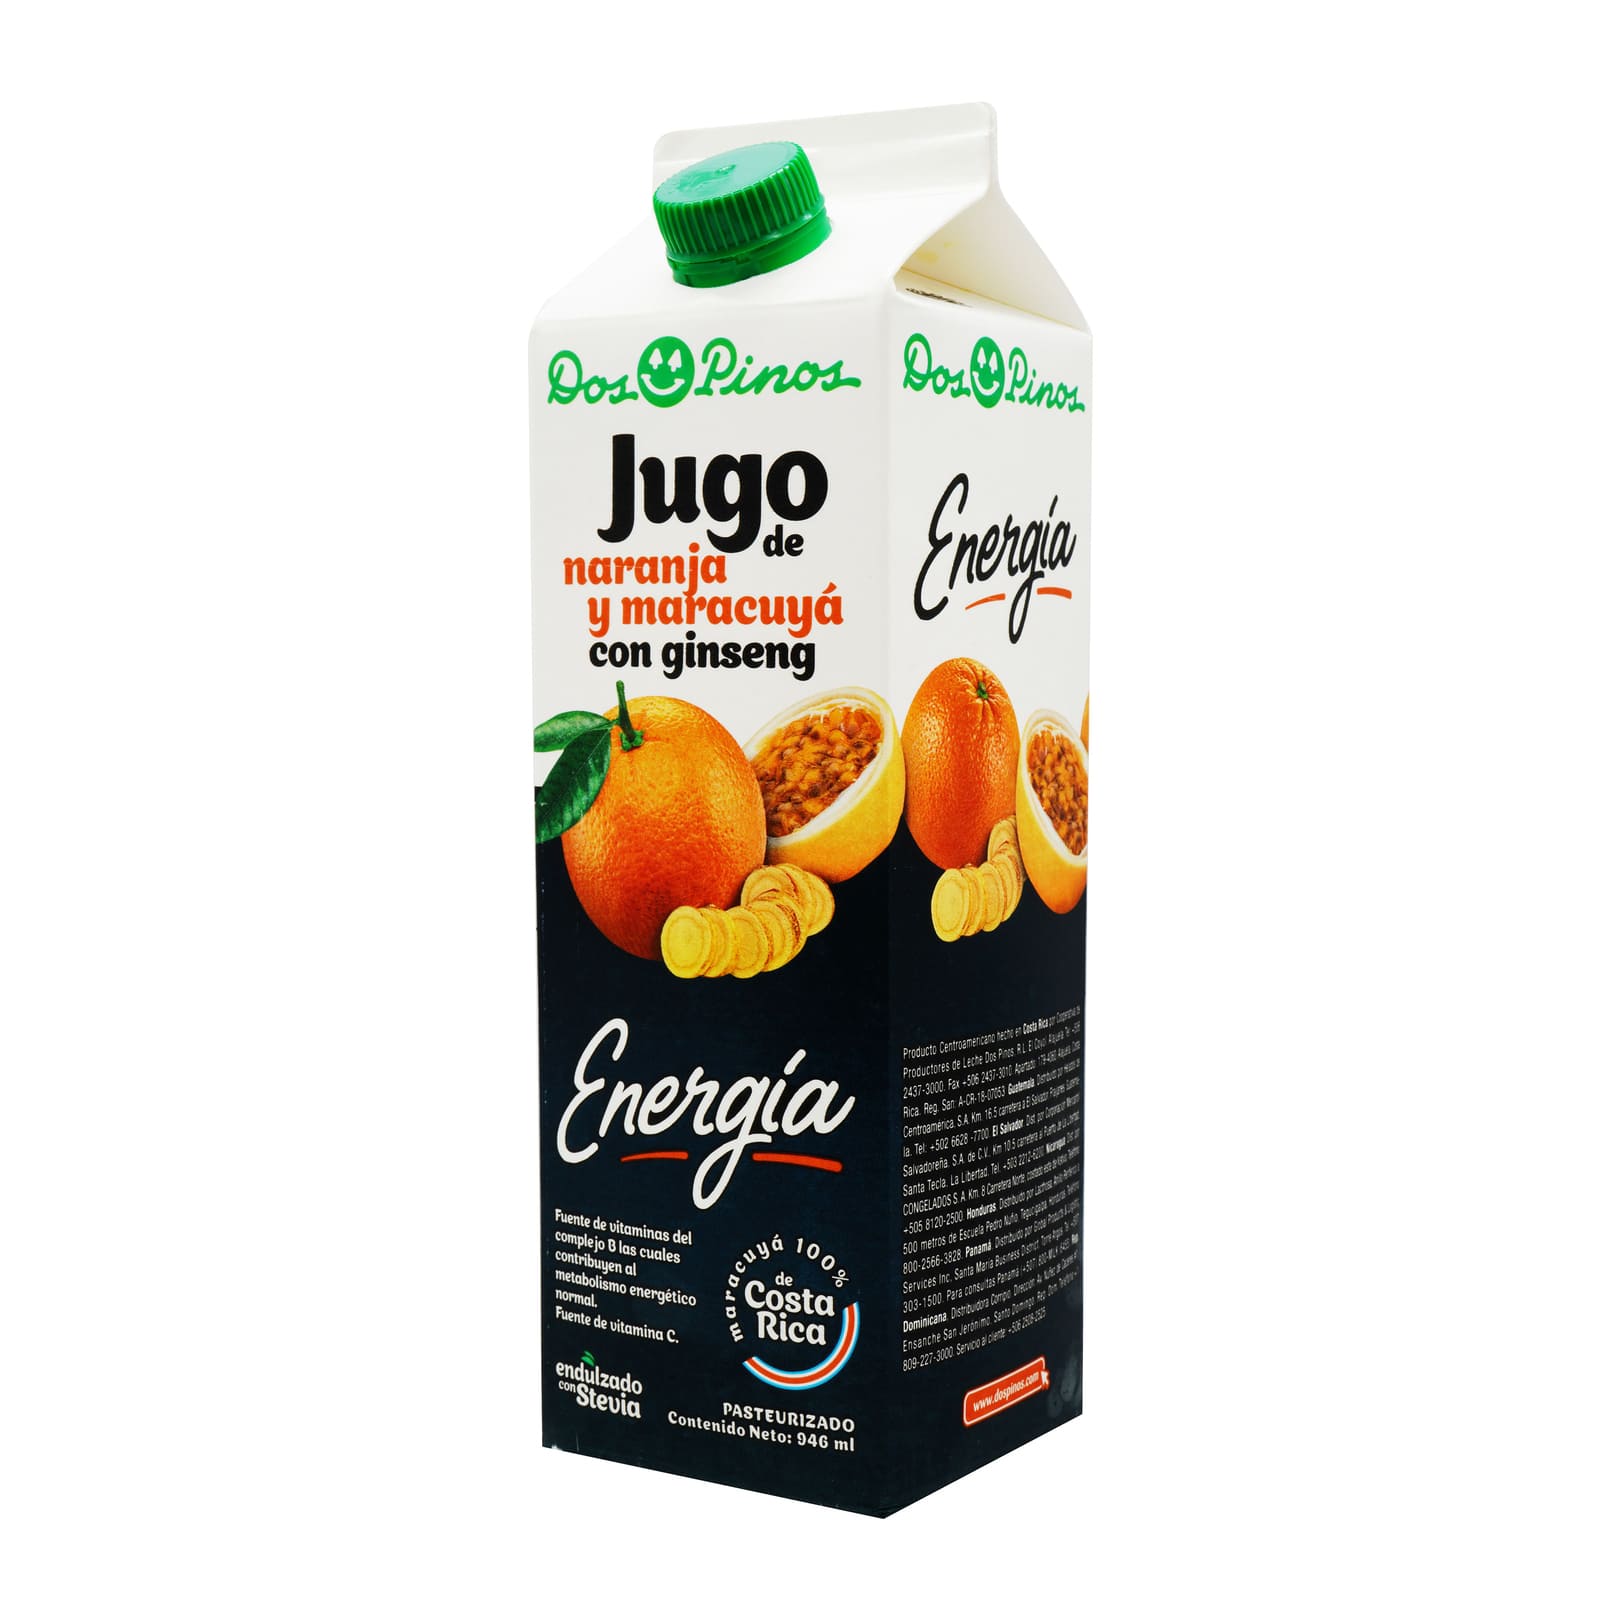 Jugo de naranja y maracuyá con ginseng Energía - Dos Pinos 986 ml